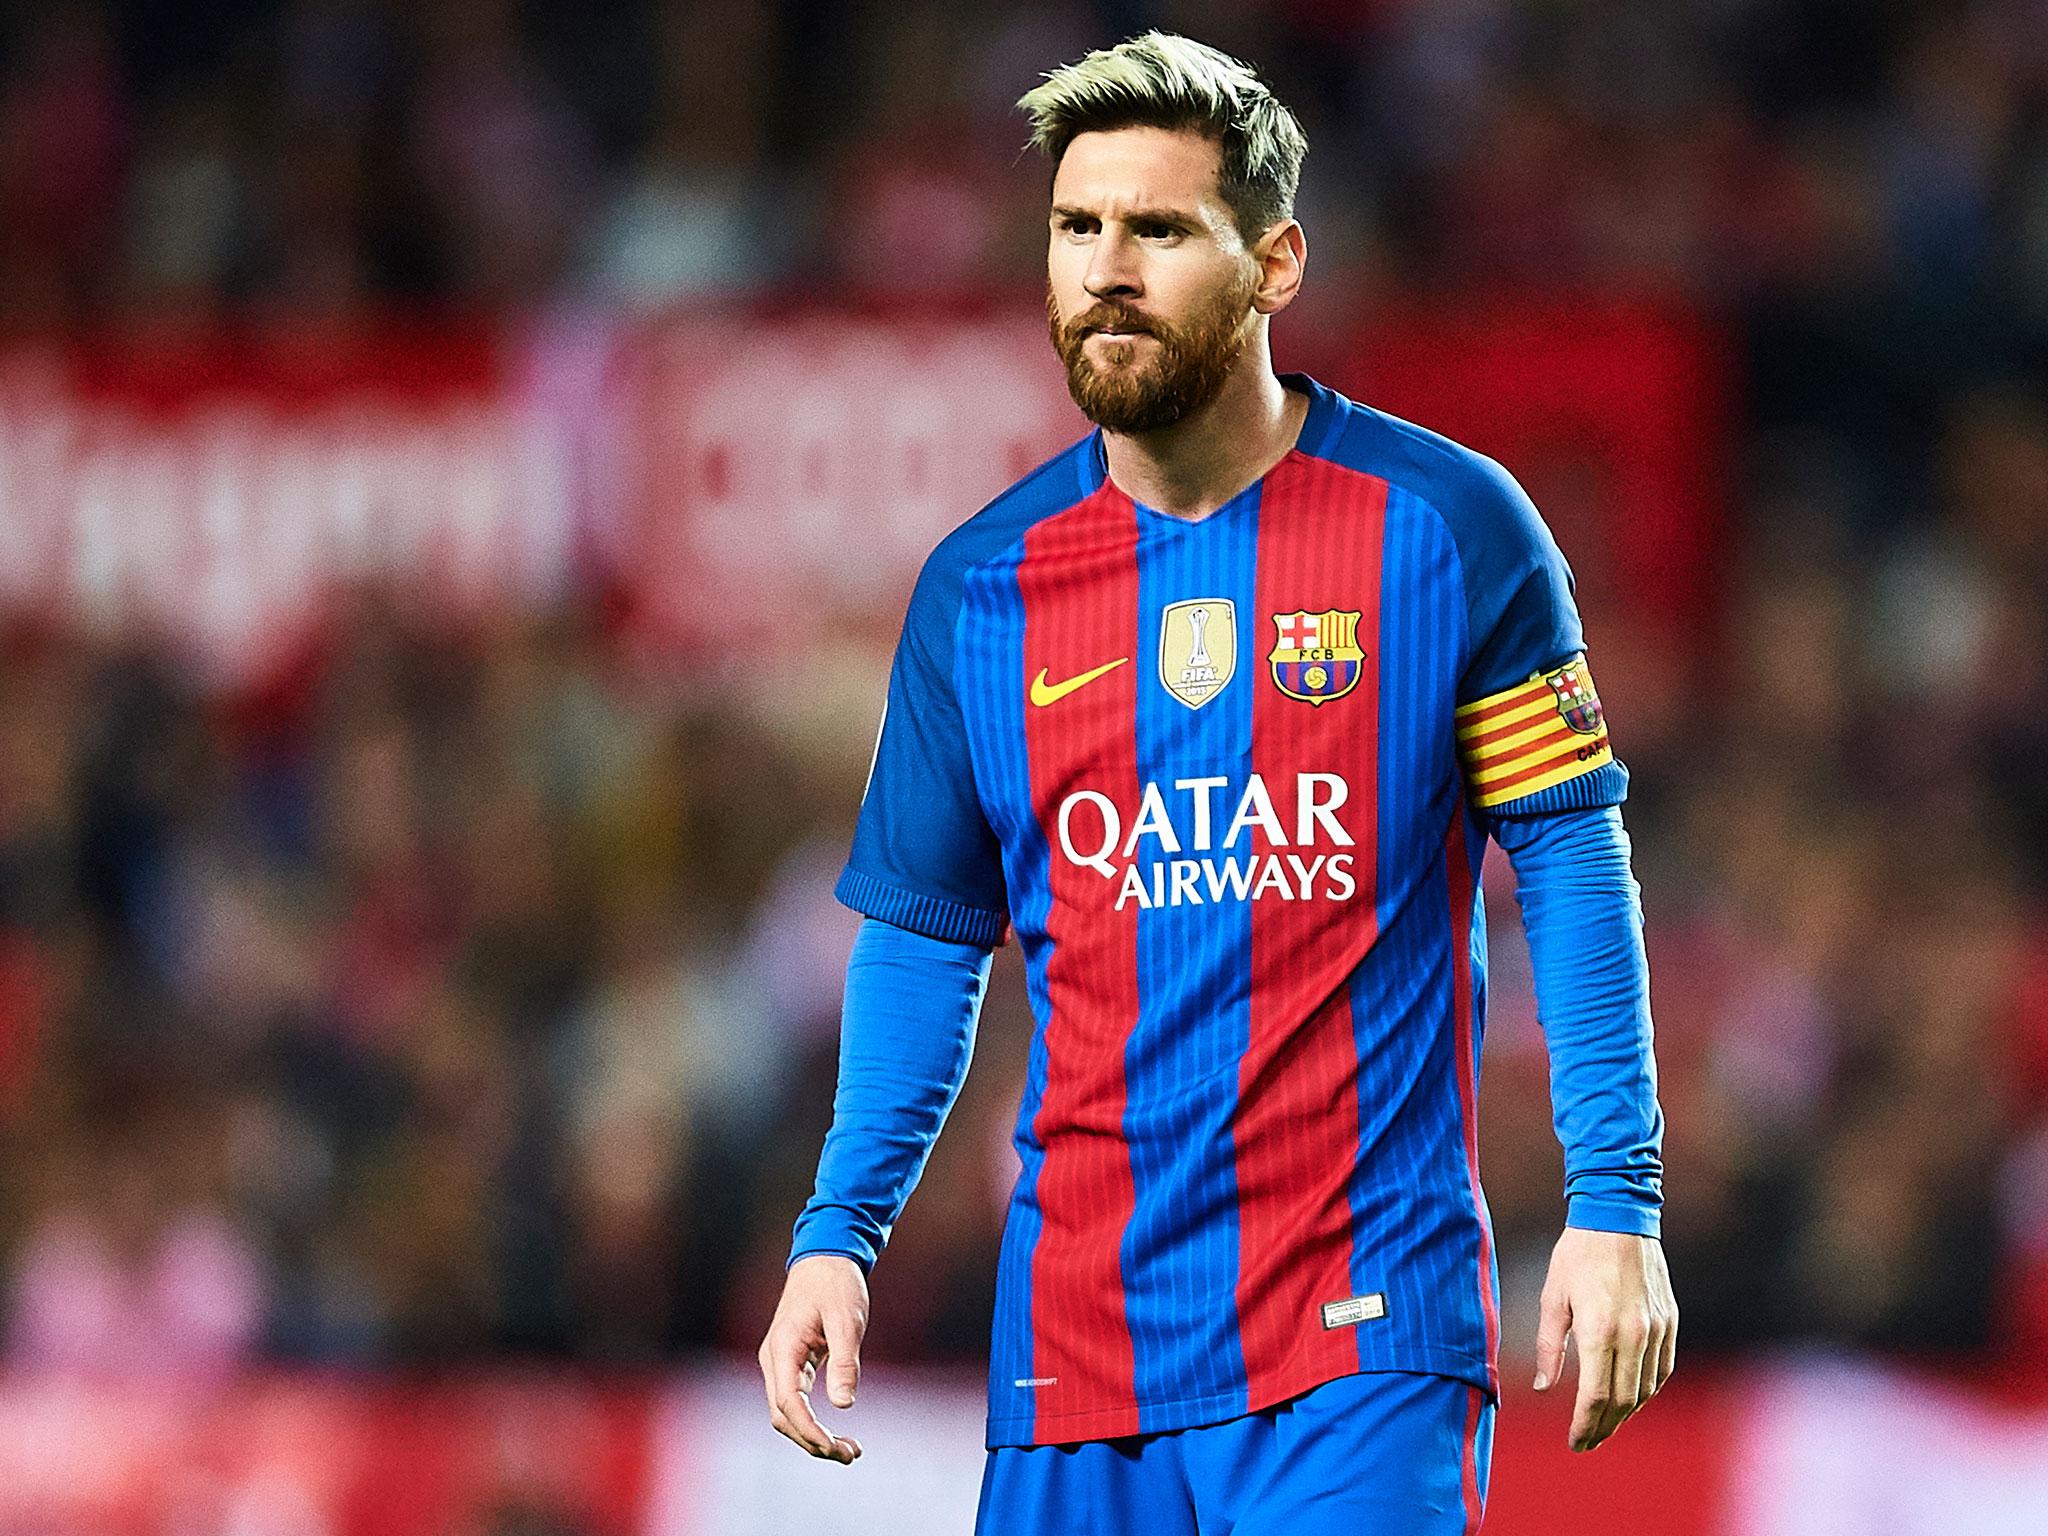 FIFA levantó sanción impuesta a Lionel Messi